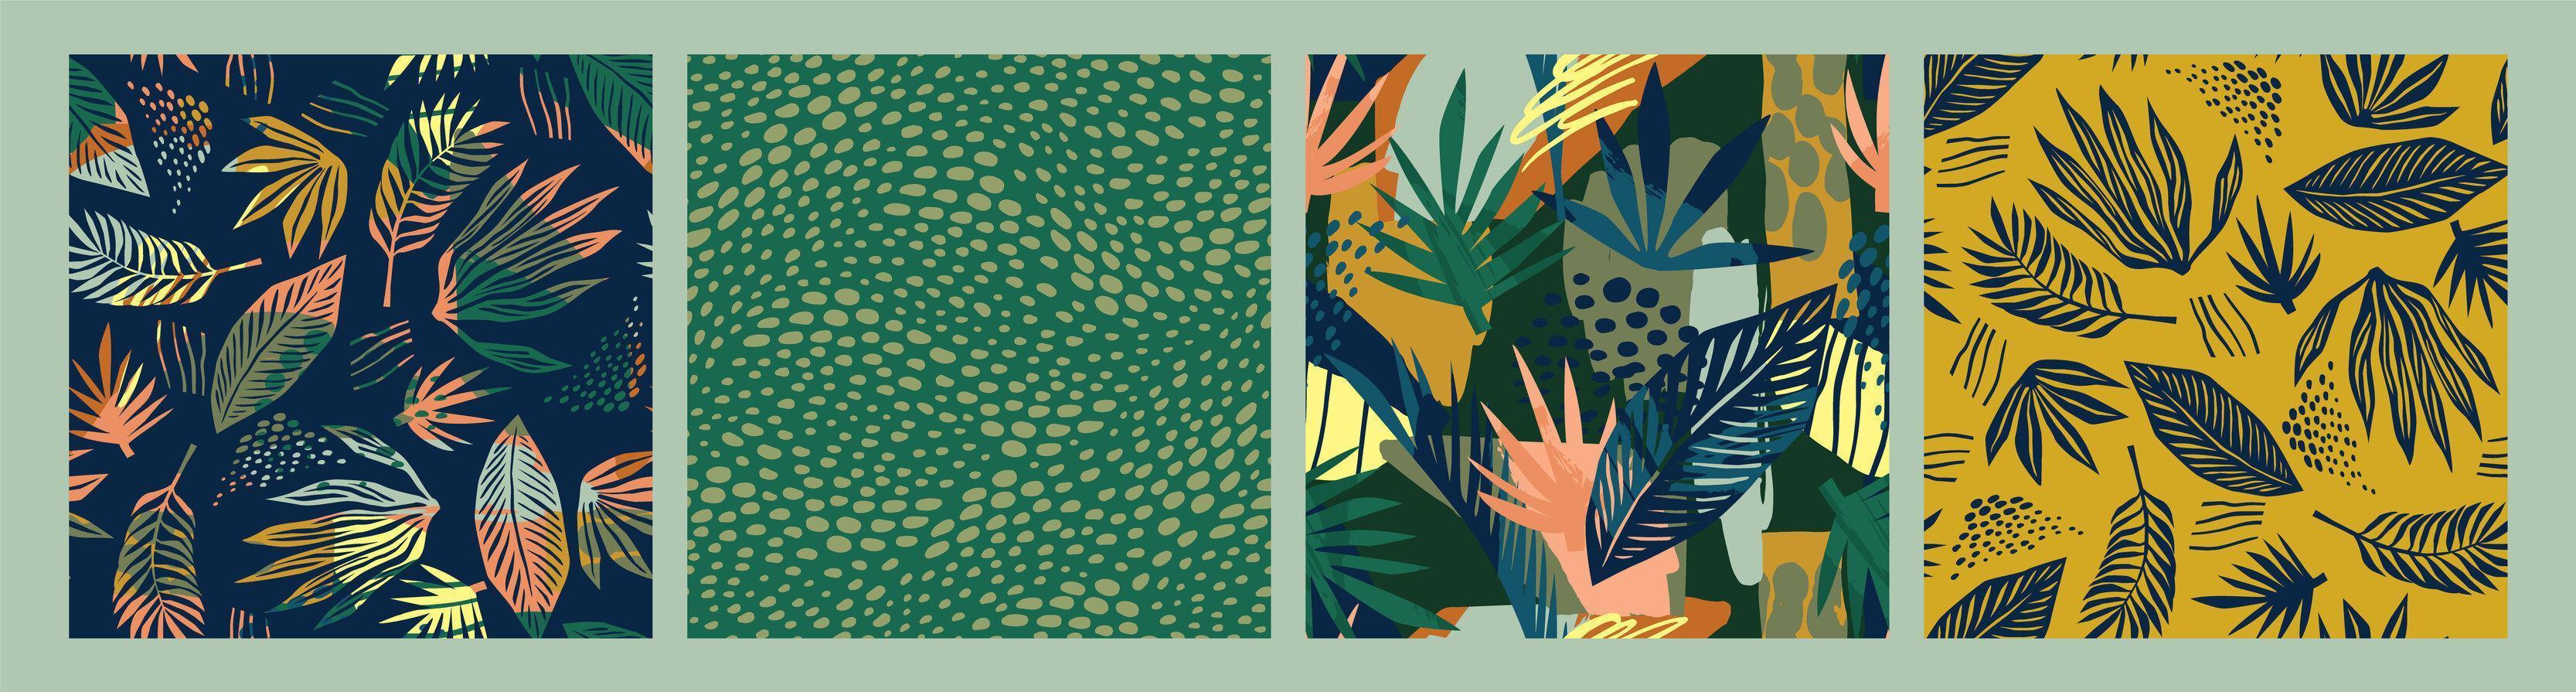 conjunto de padrões sem emenda de arte abstrata com folhas tropicais. design exótico moderno vetor